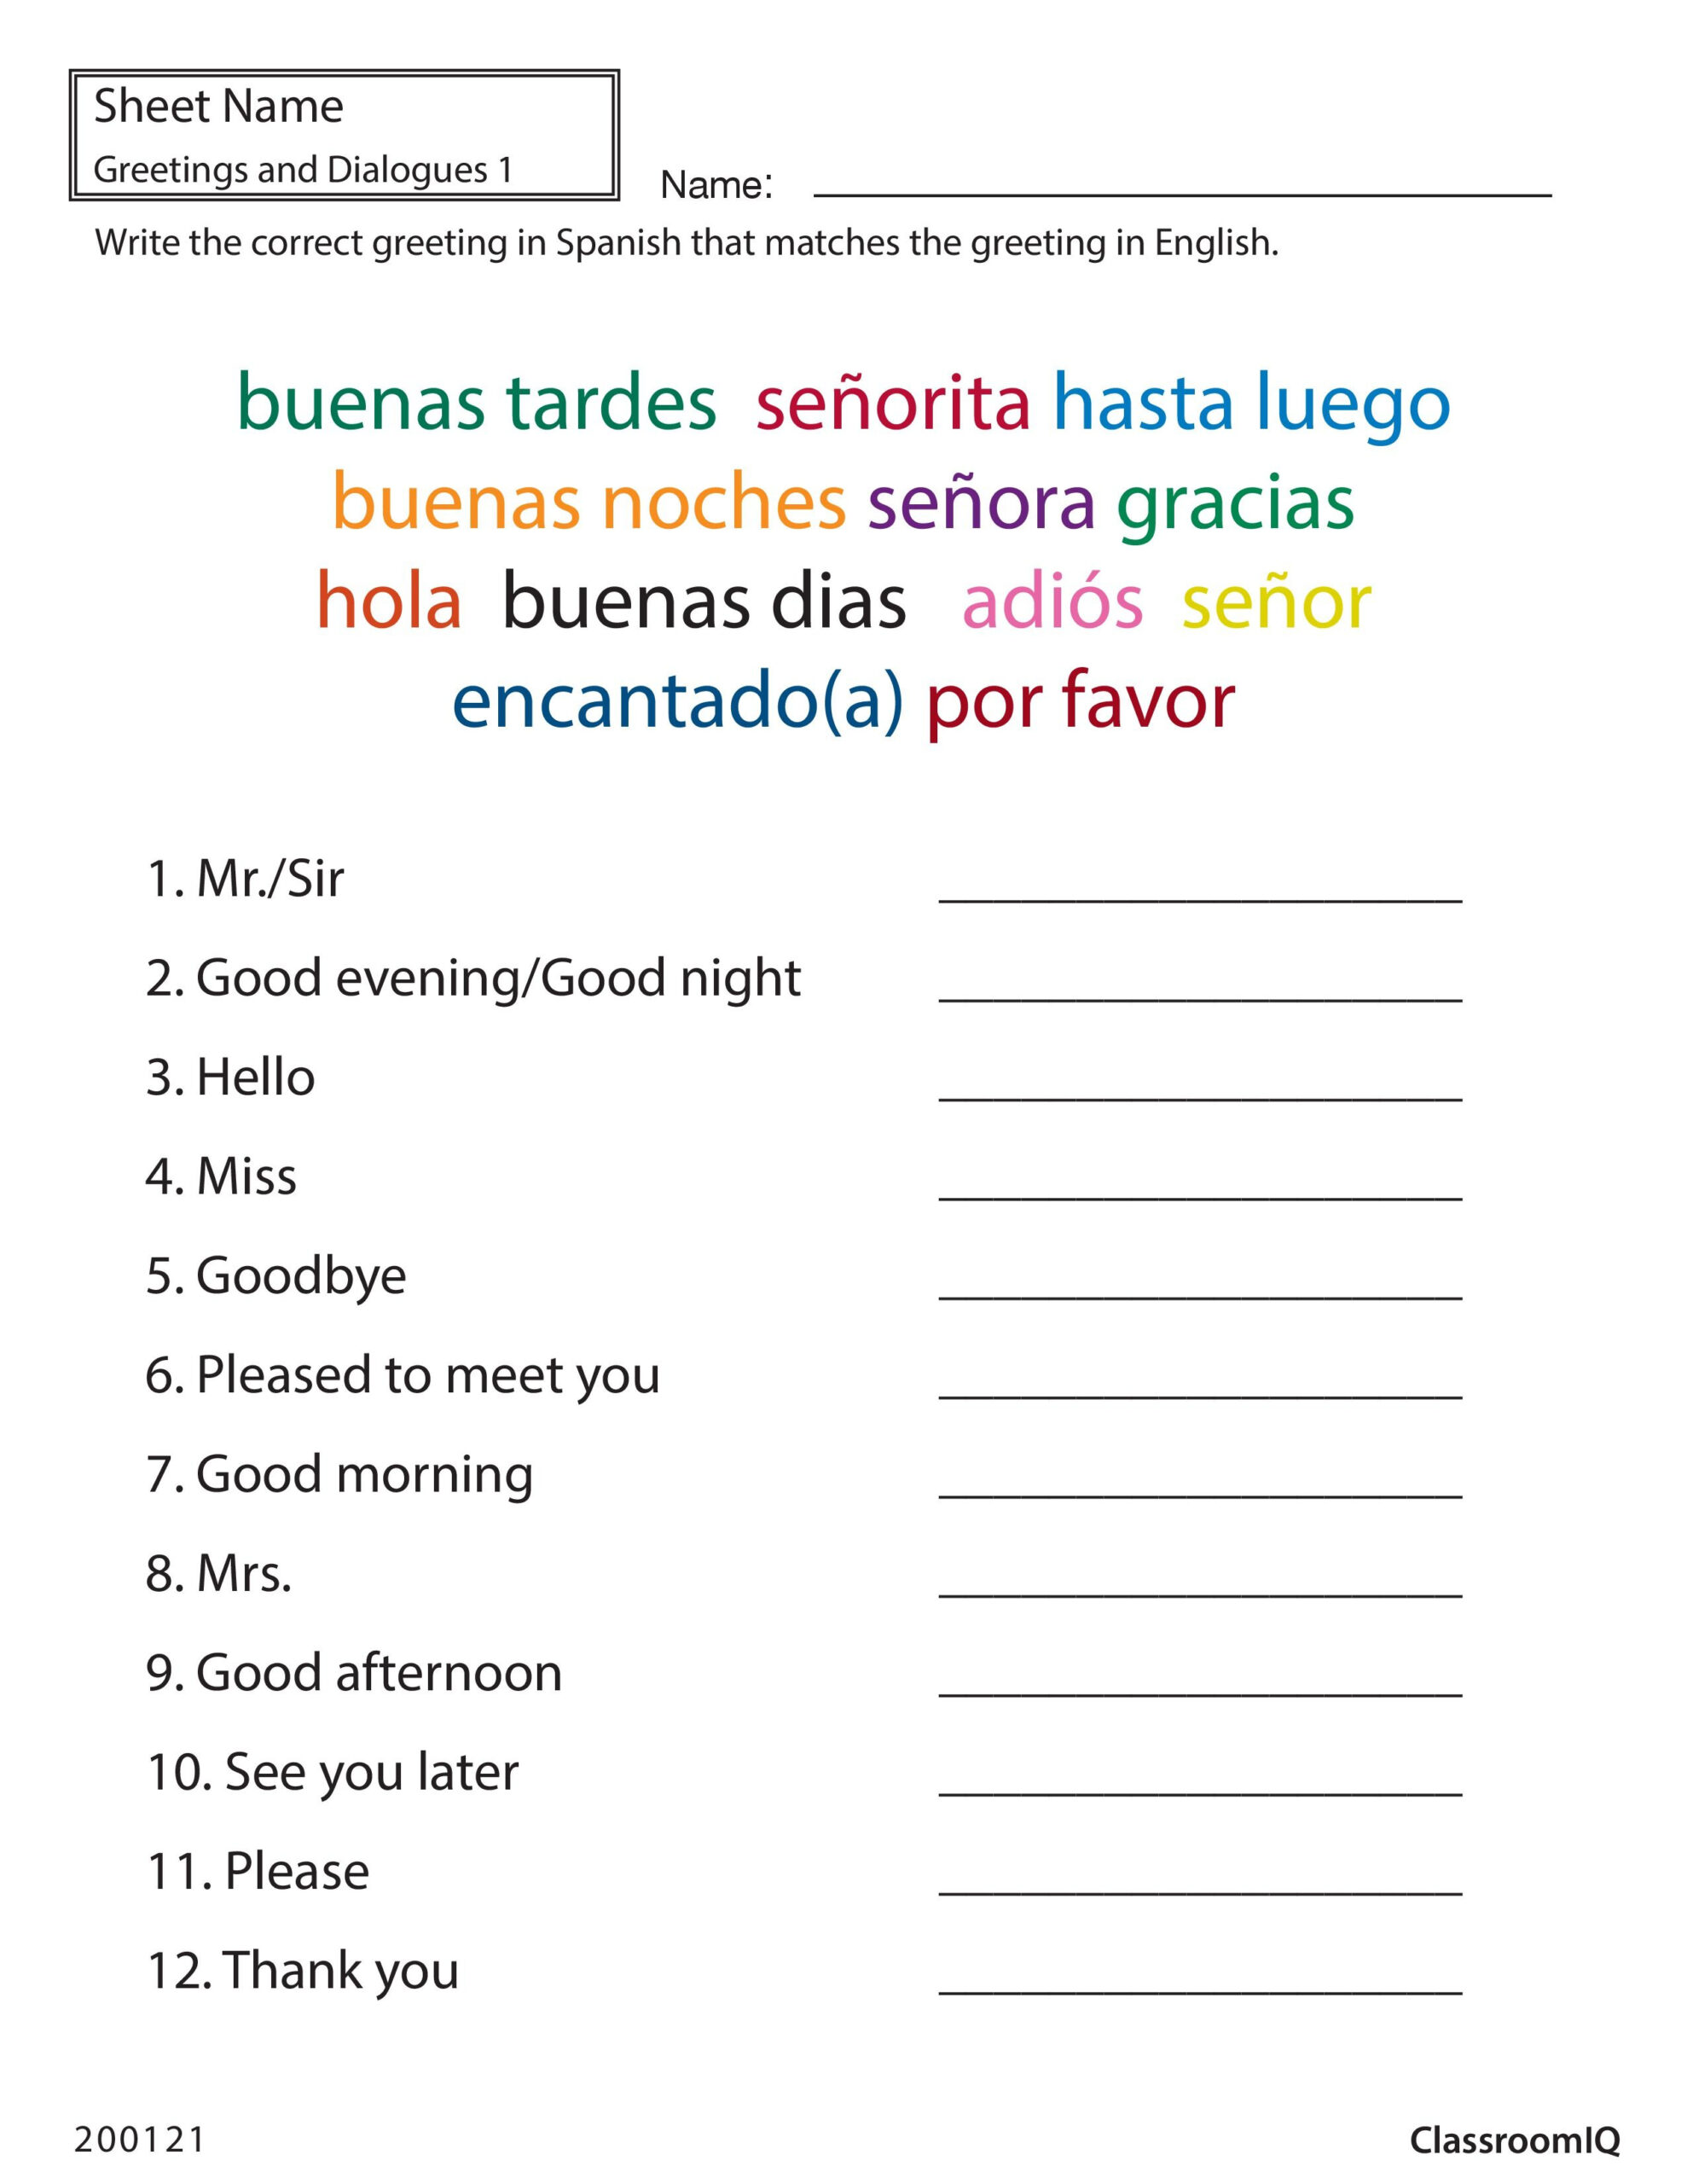 Spanish Greetings Matching classroomiq spanishworksheets newteachers 